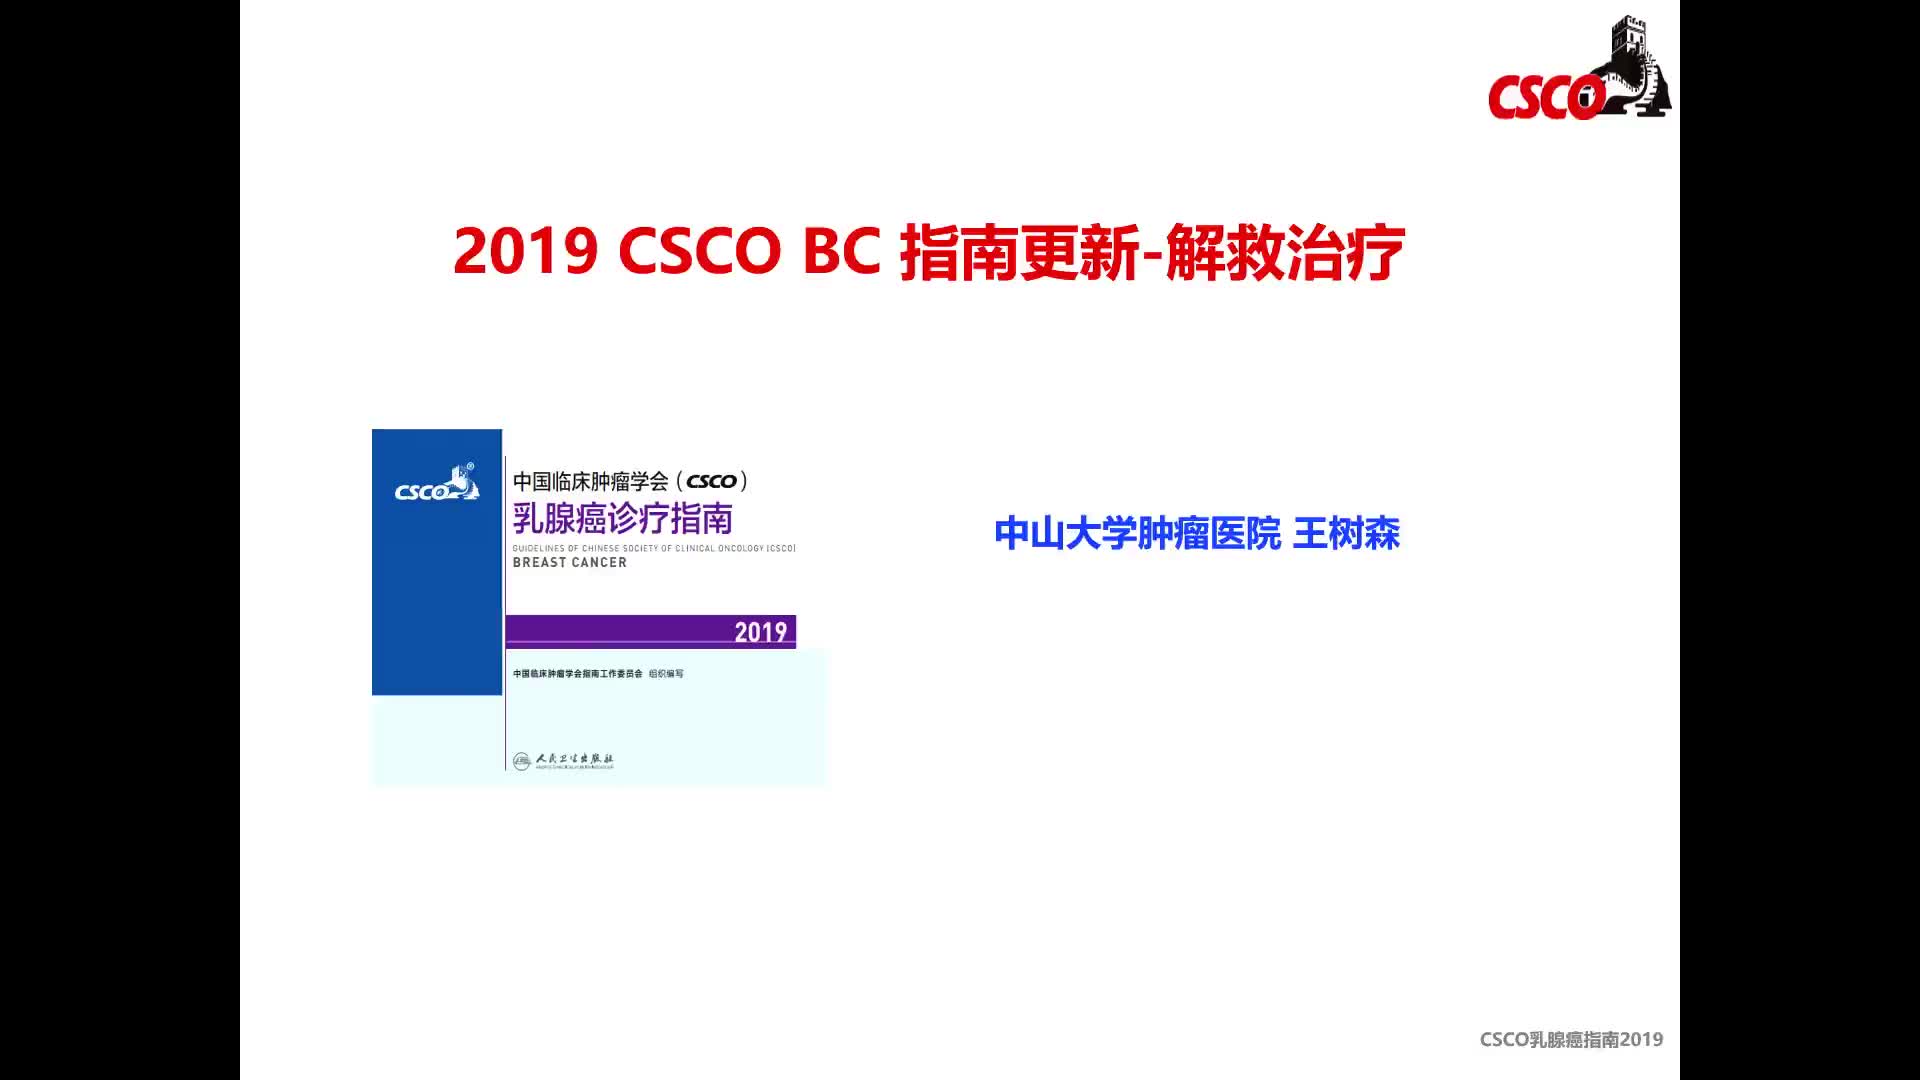  2019 CSCO BC指南更新要点 - 解救治疗                